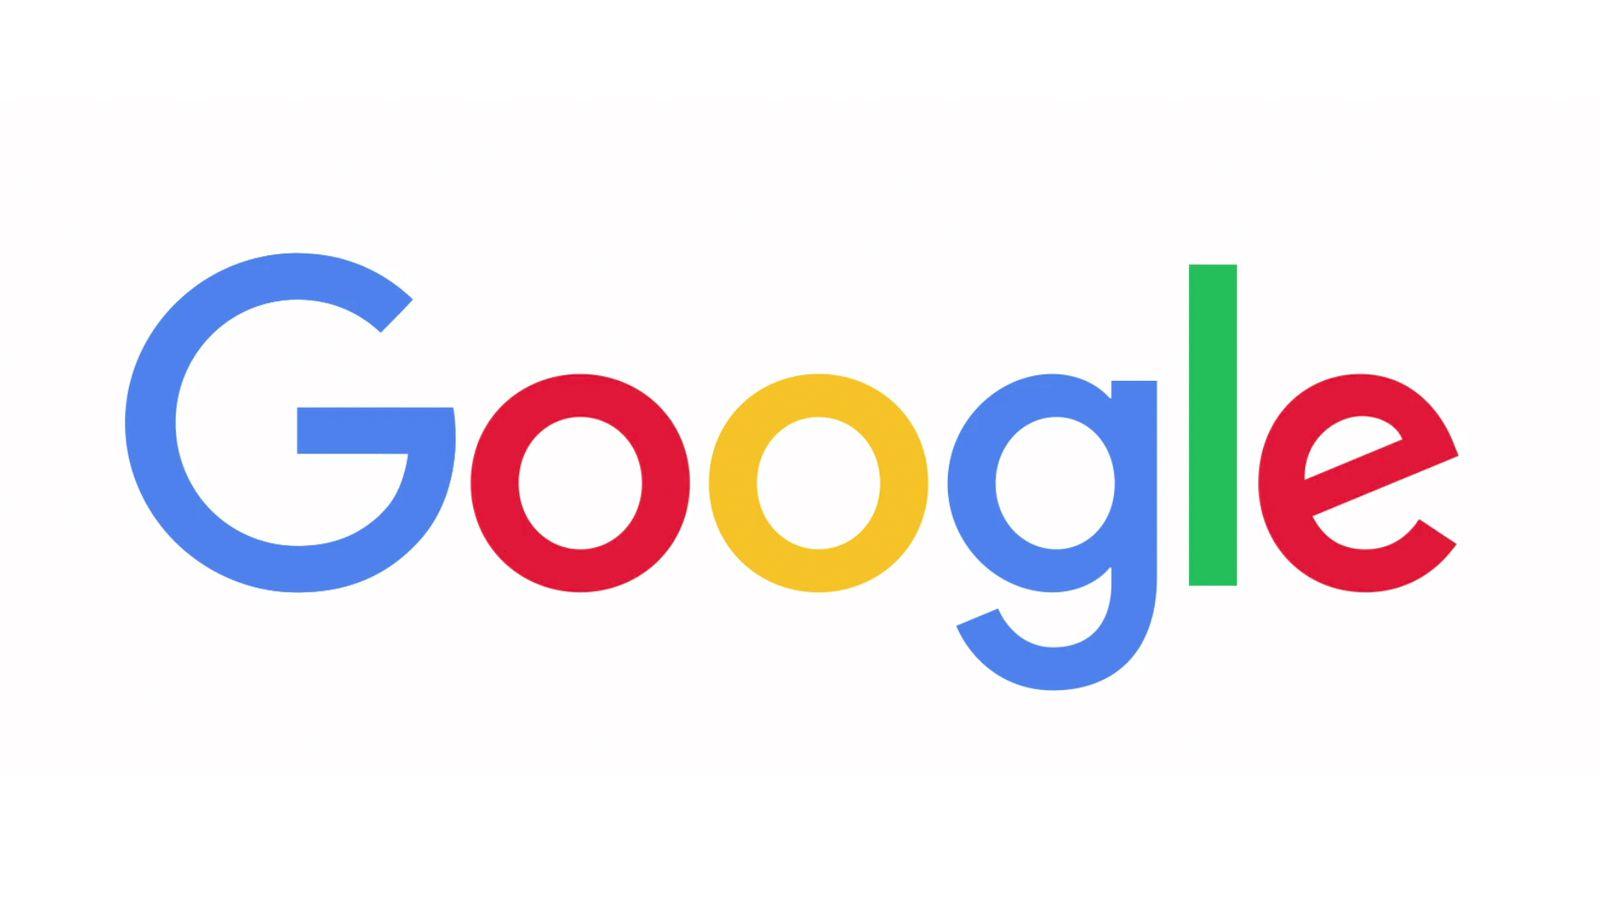 Google Company Logo - Google has a new logo